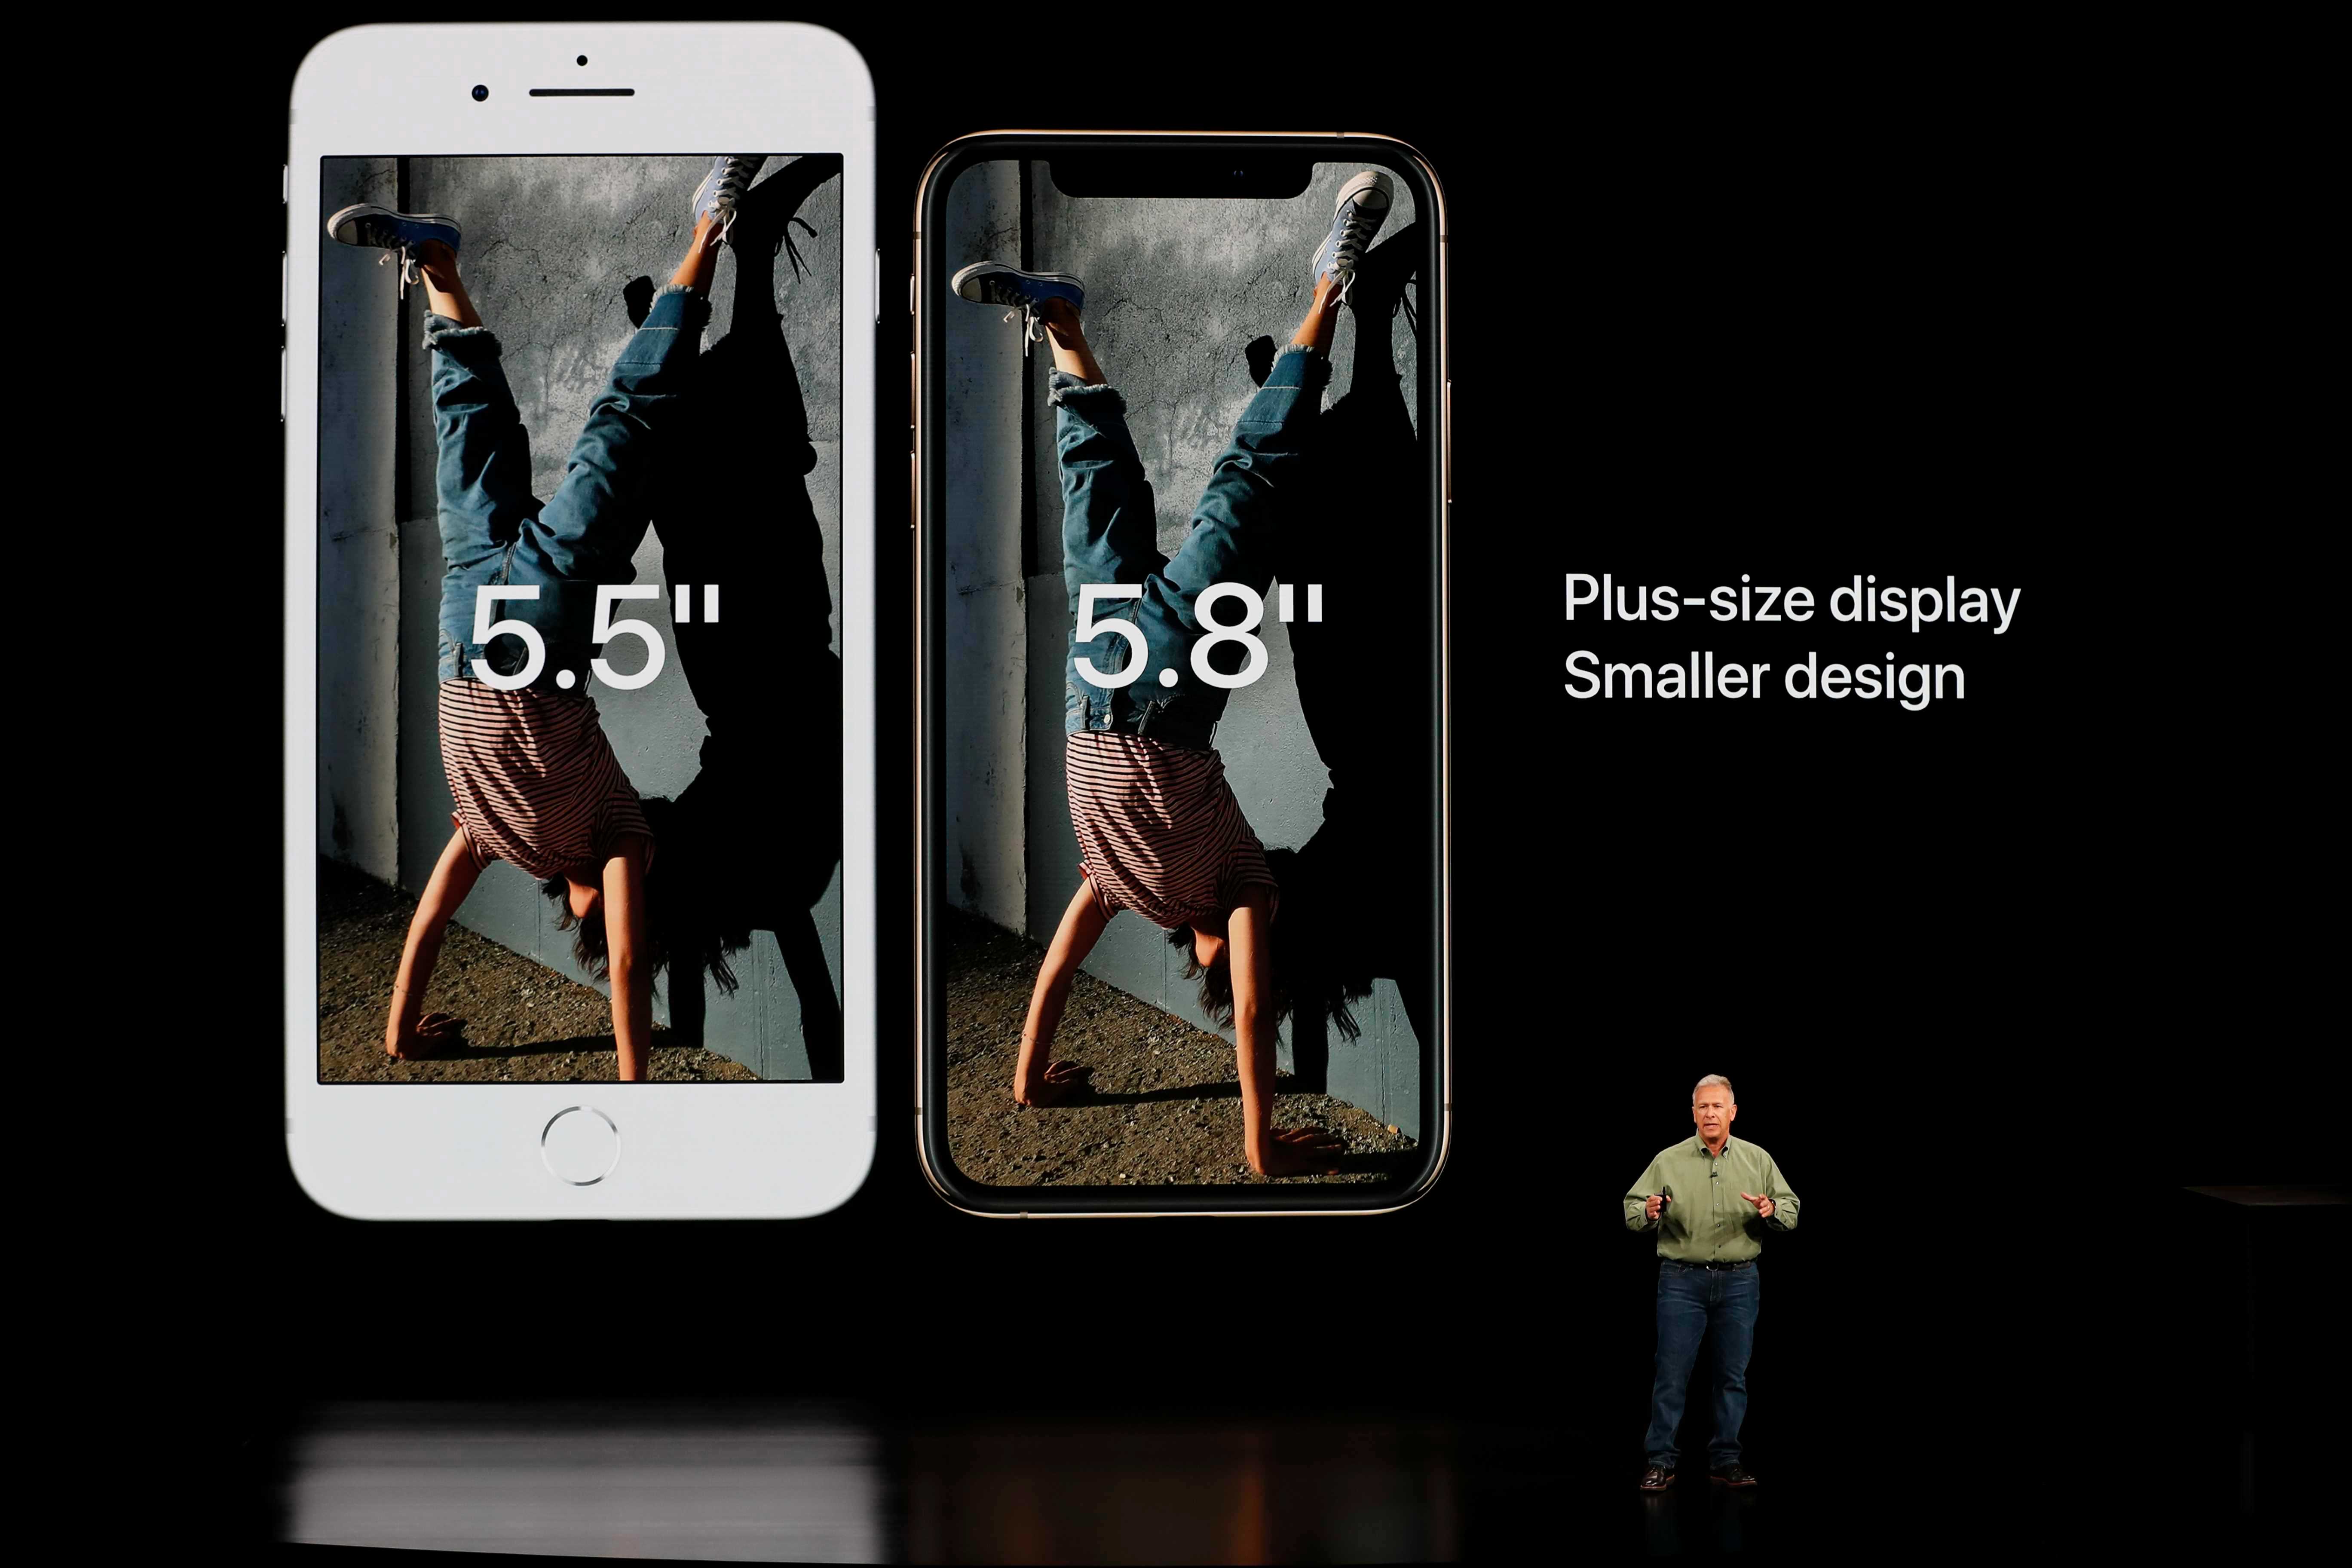  IPhone 2019 terbesar bisa lebih besar dari Apple Model 2018, menurut rumor seluler 6,7 inci